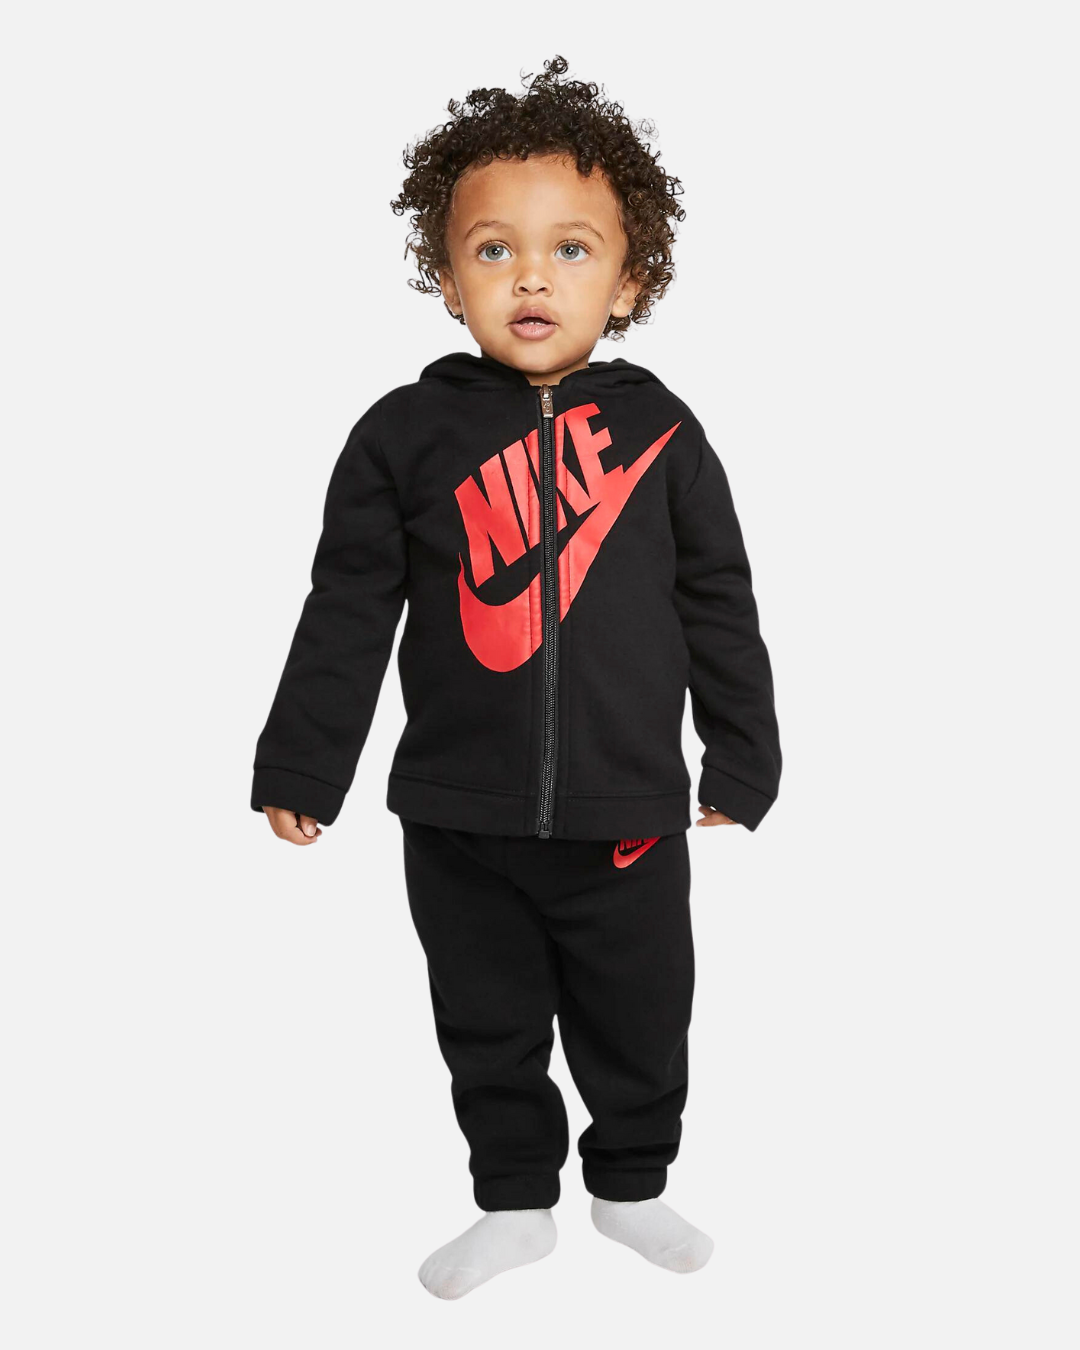 Survêtement Nike Sportswear Bébé - Rouge/Noir